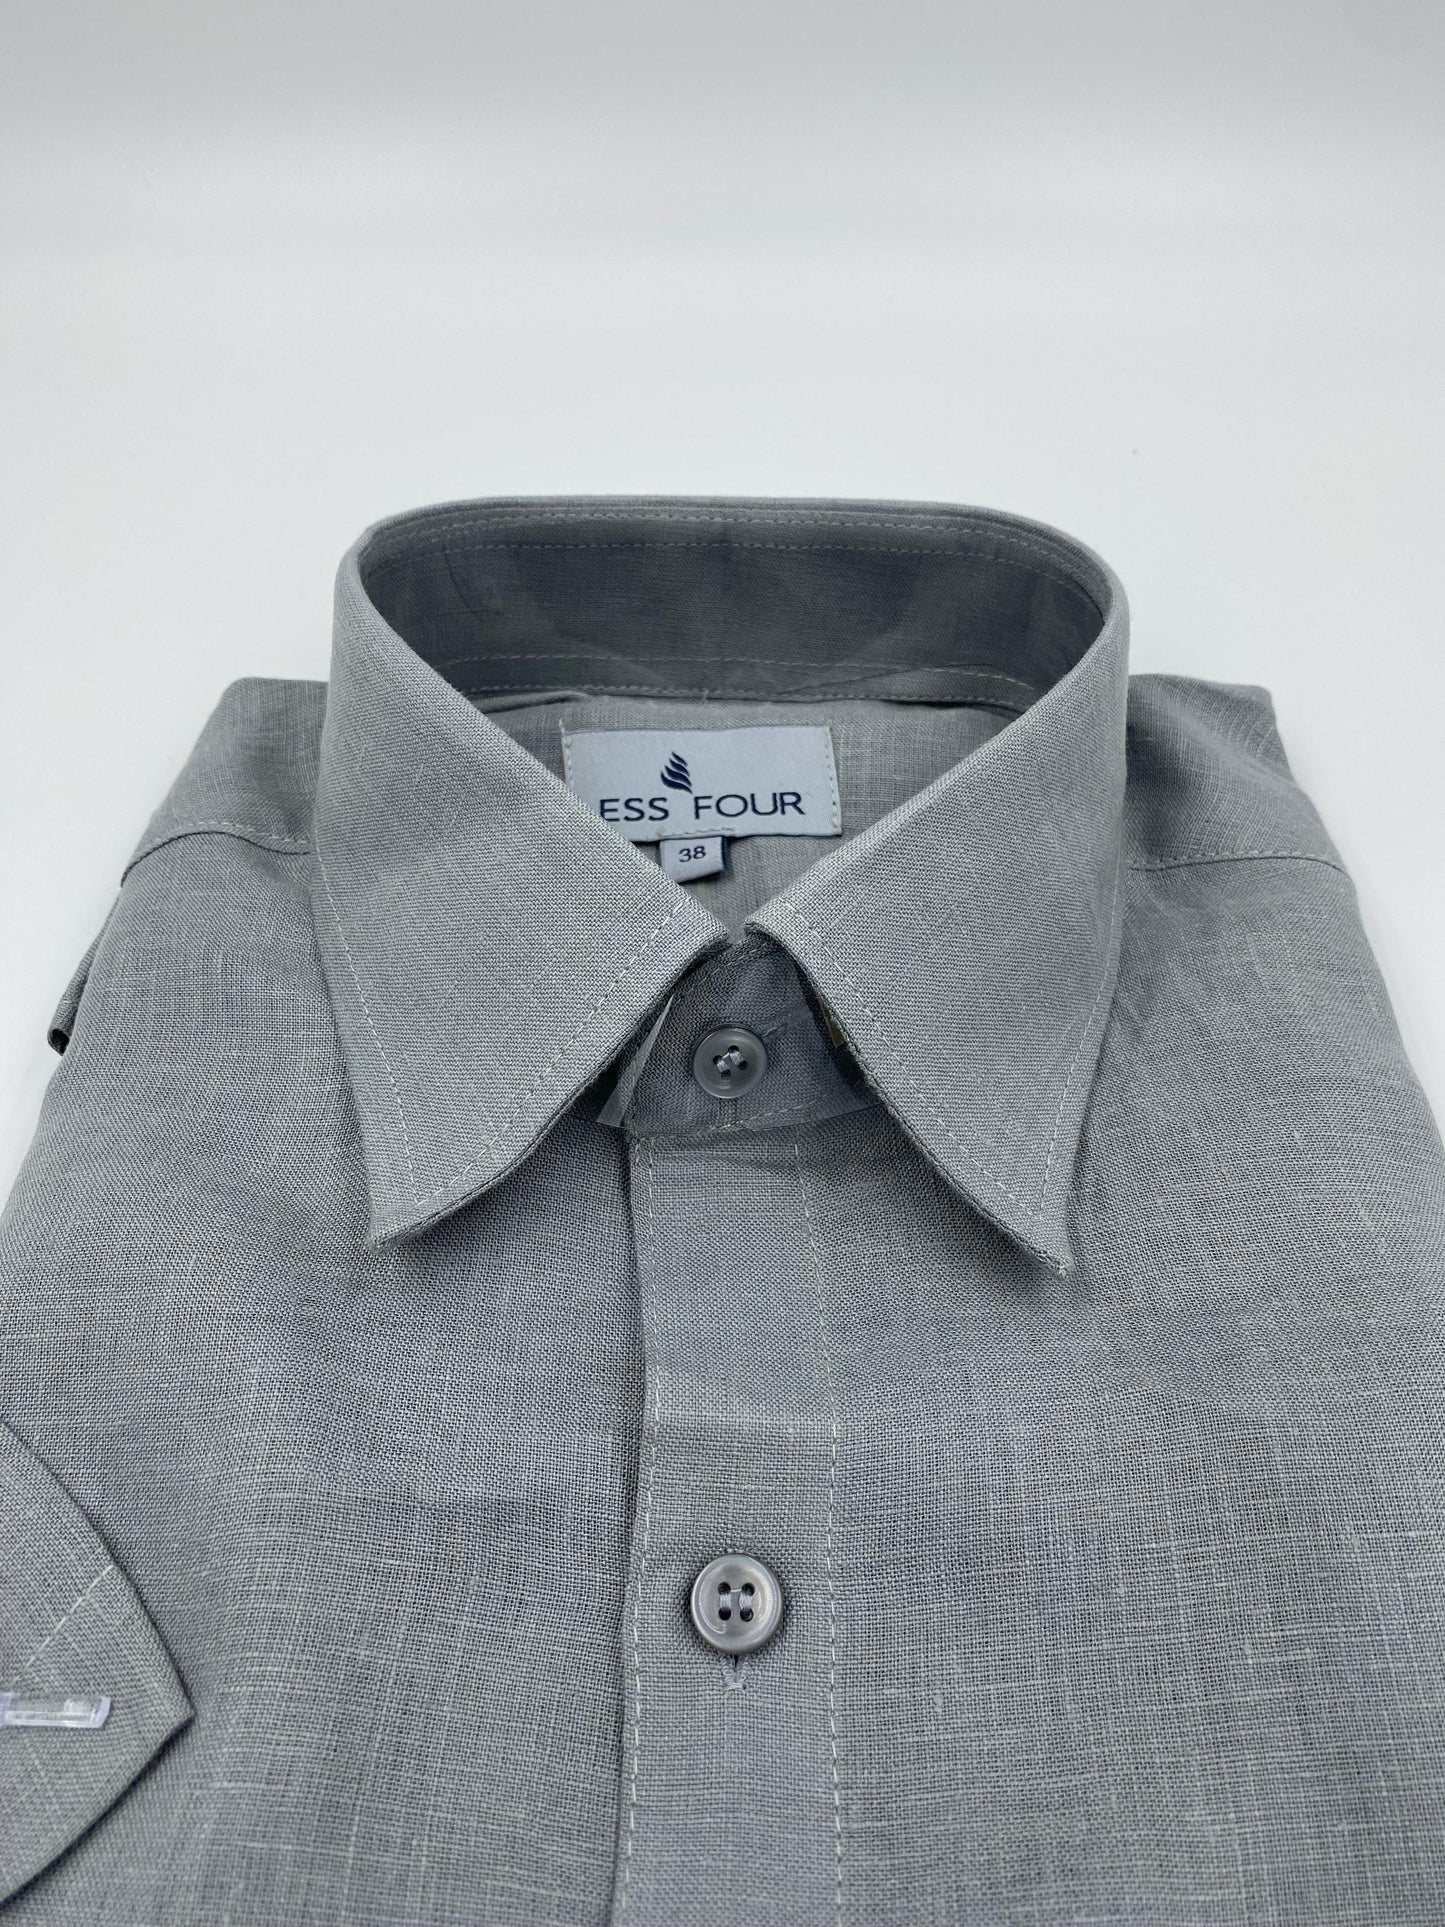 Light Grey Linen Shirt - Men's Linen Shirt